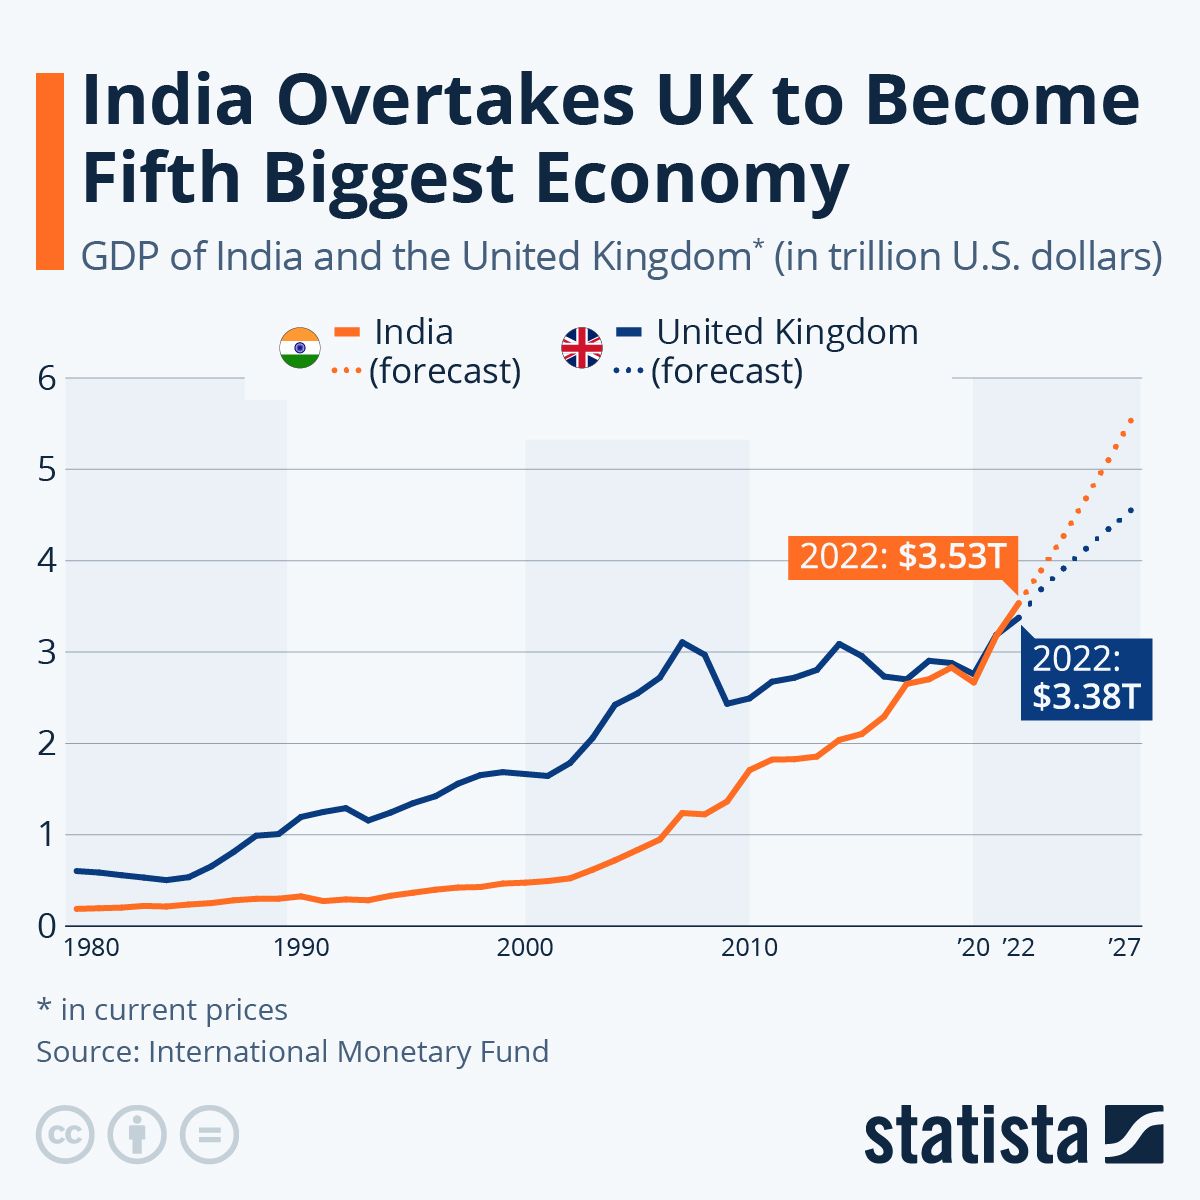 Az ábra India és az Egyesült Királyság GDP-jét mutatja 1980 és (várhatóan) 2027 között. Infografika: Statista